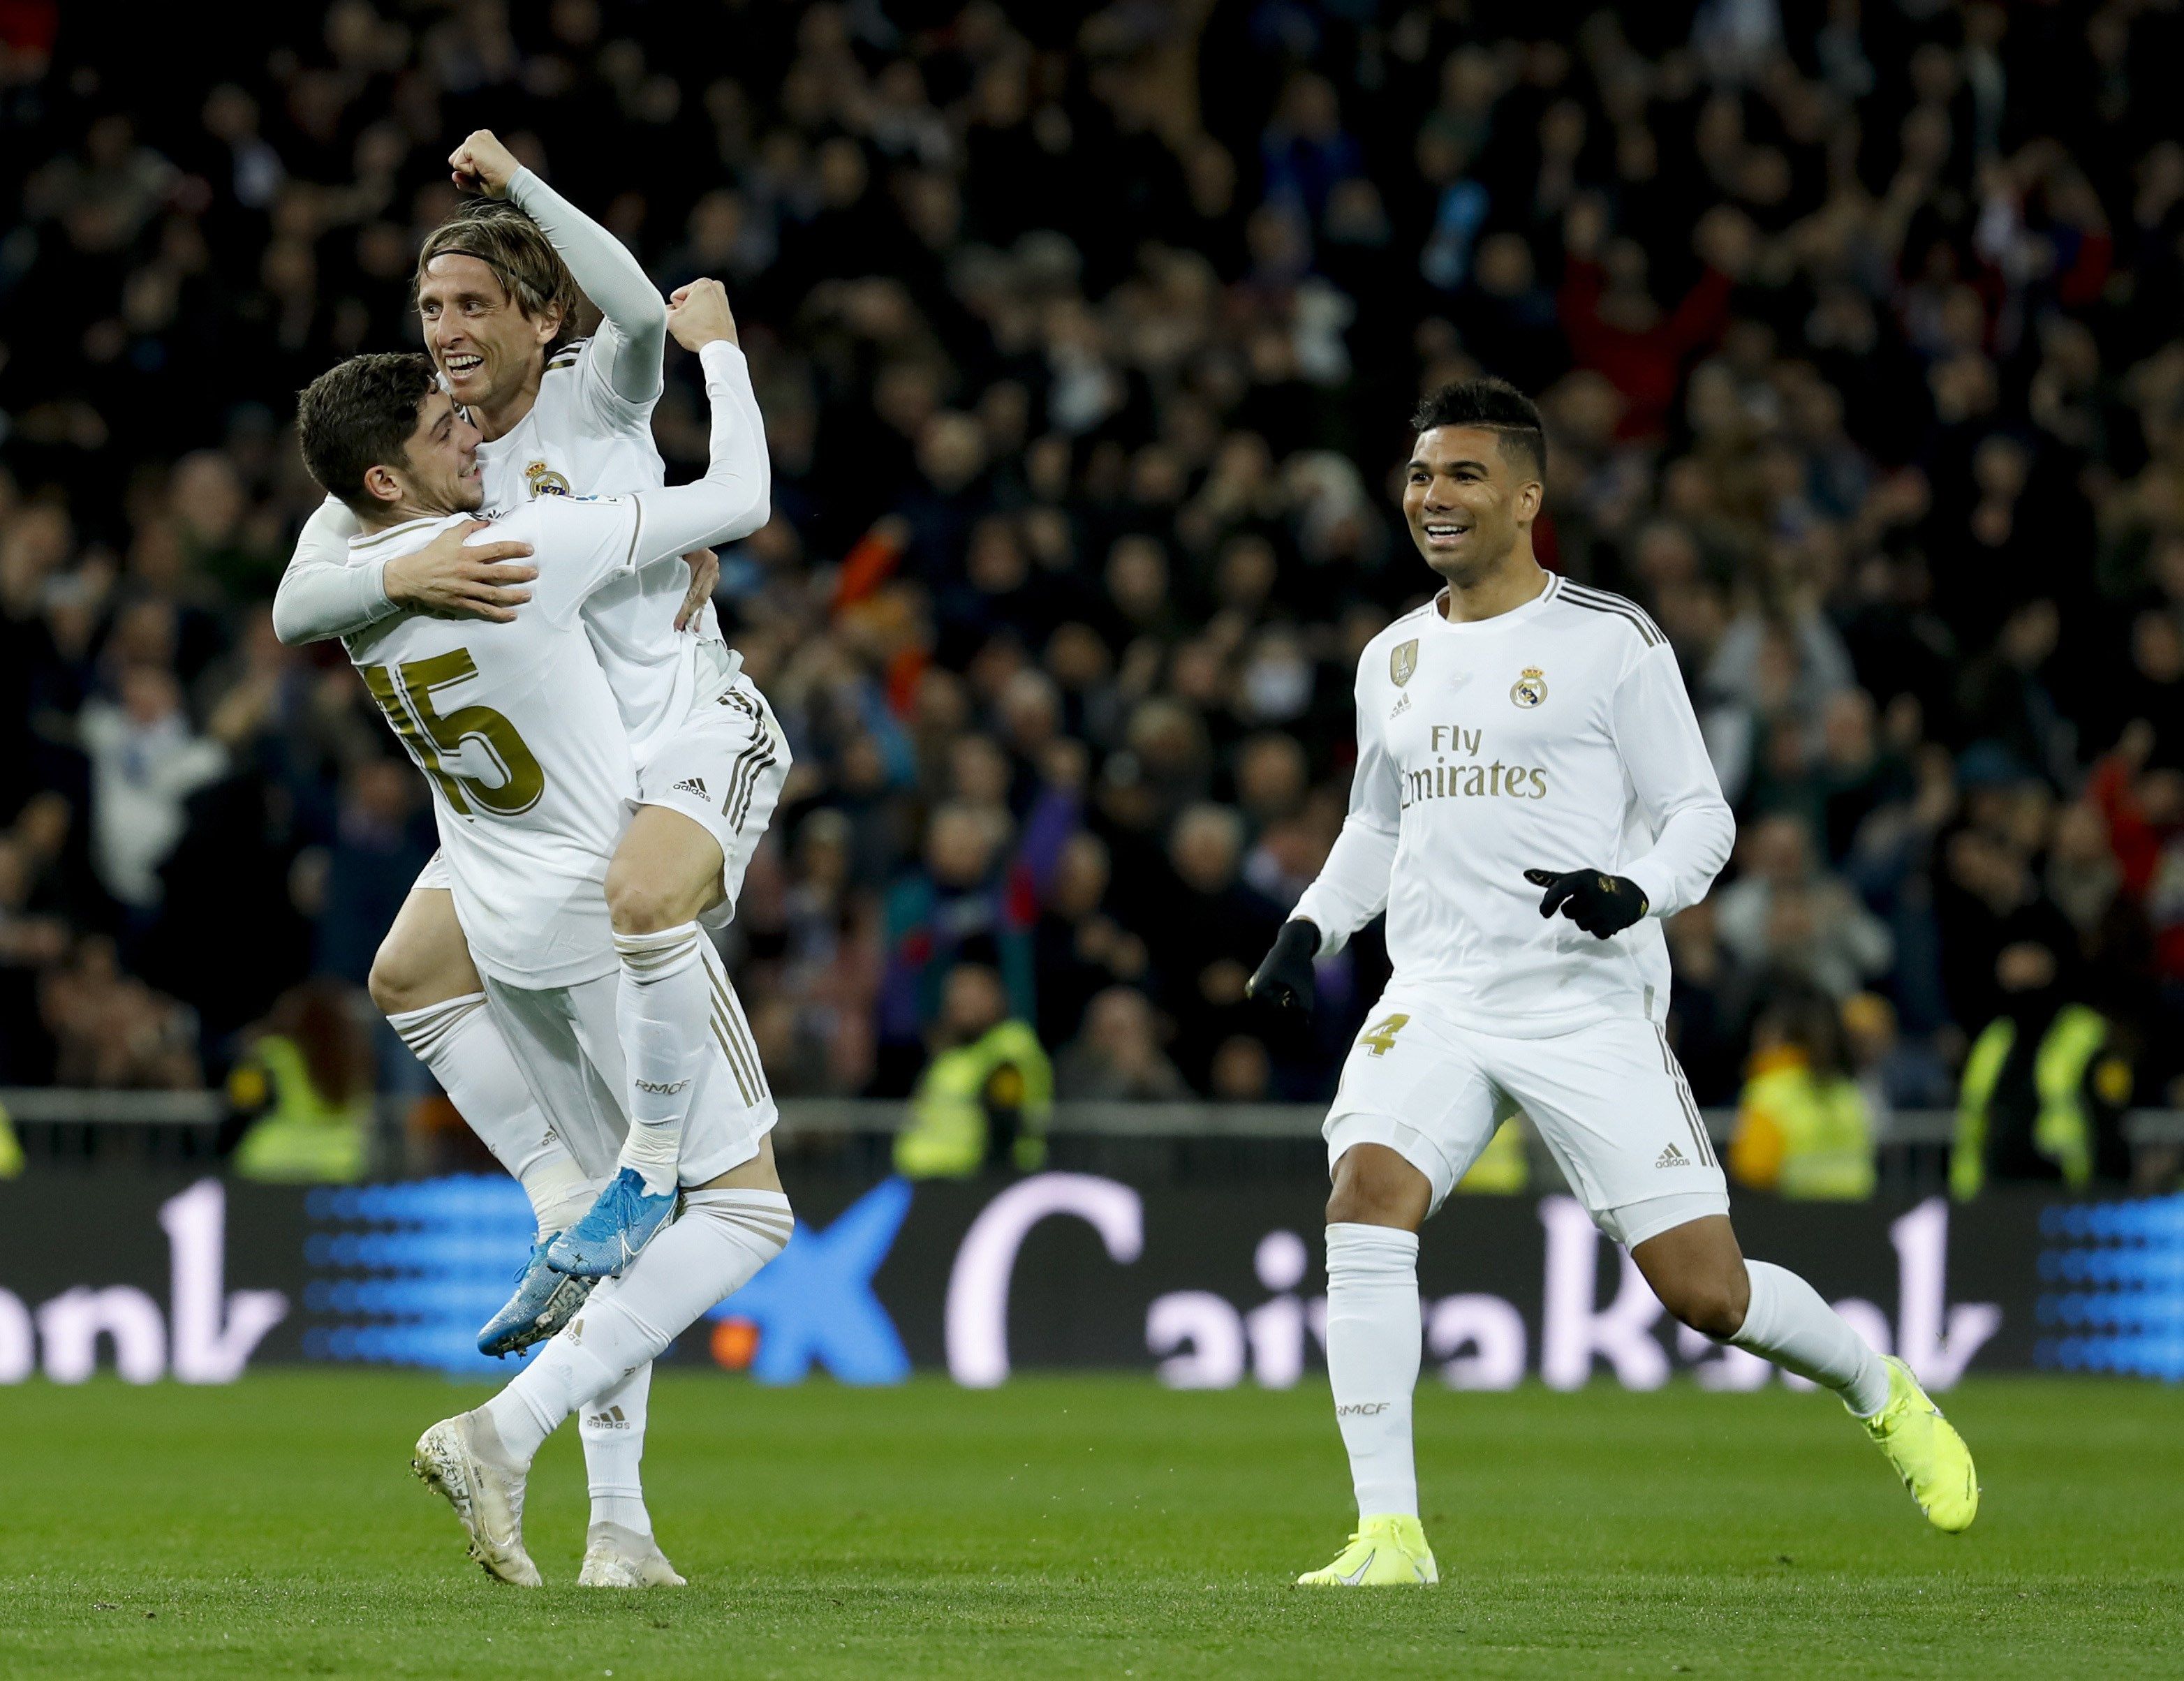  El jugador del Real Madrid Federico Valverde (i), celebra su gol con su compañero Luka Modric (c) durante el partido ante la Real Sociedad, (Foto Prensa Libre: EFE)